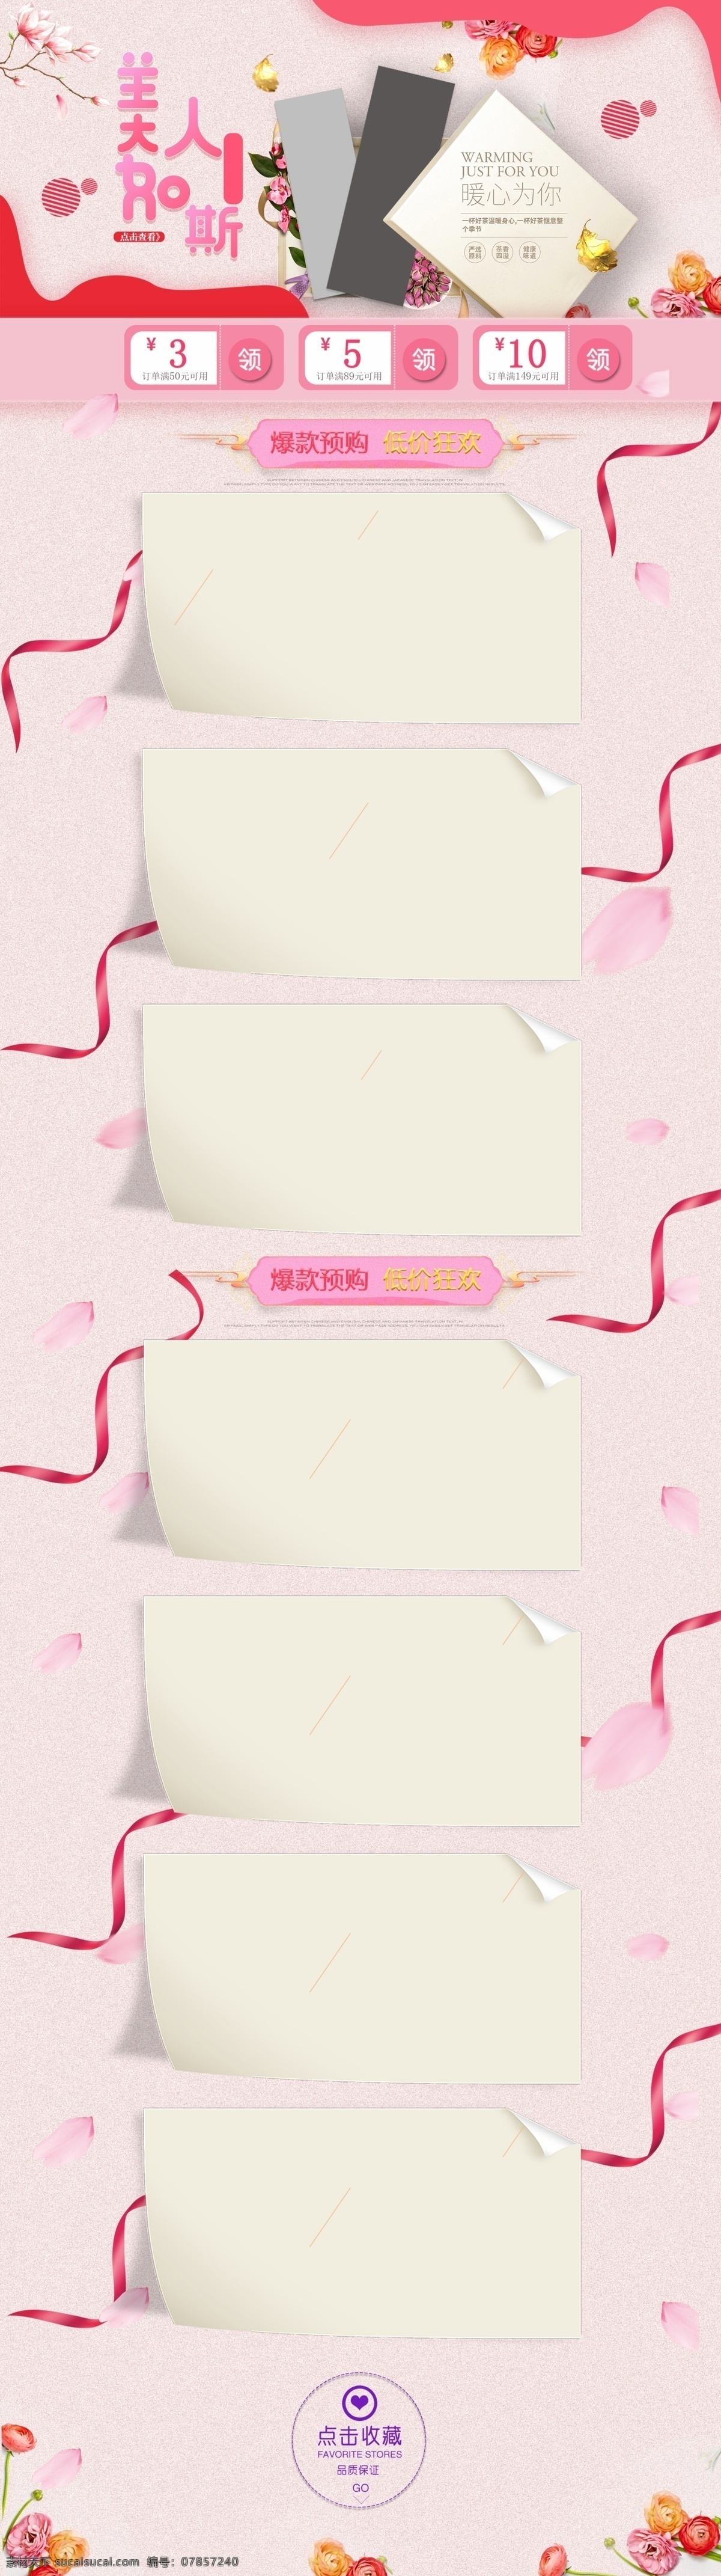 淘宝 天猫 粉色 促销 首页 pc 2018春天 简约 浪漫214 美妆 情人节 食品